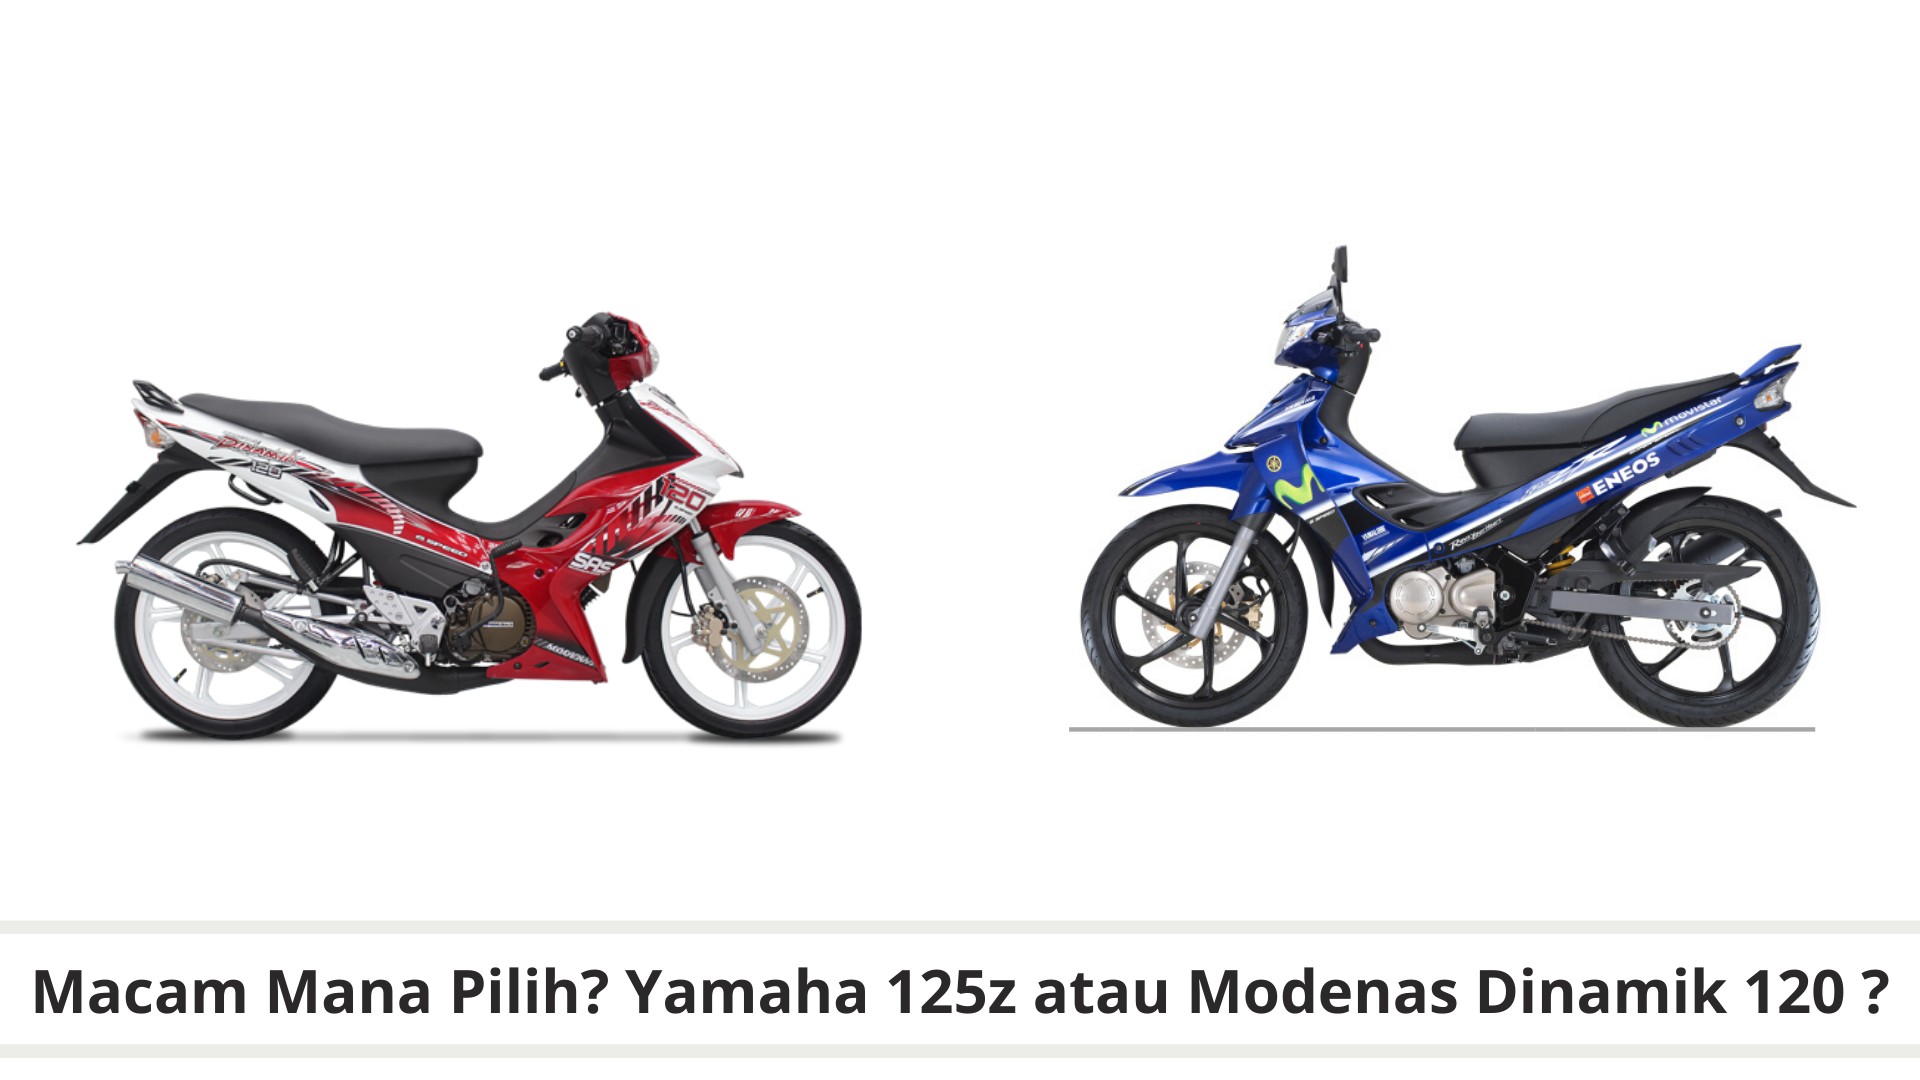 Beli Yamaha 125z atau Modenas Dinamik 120, mana satu lagi berbaloi? Jawapan di sini!